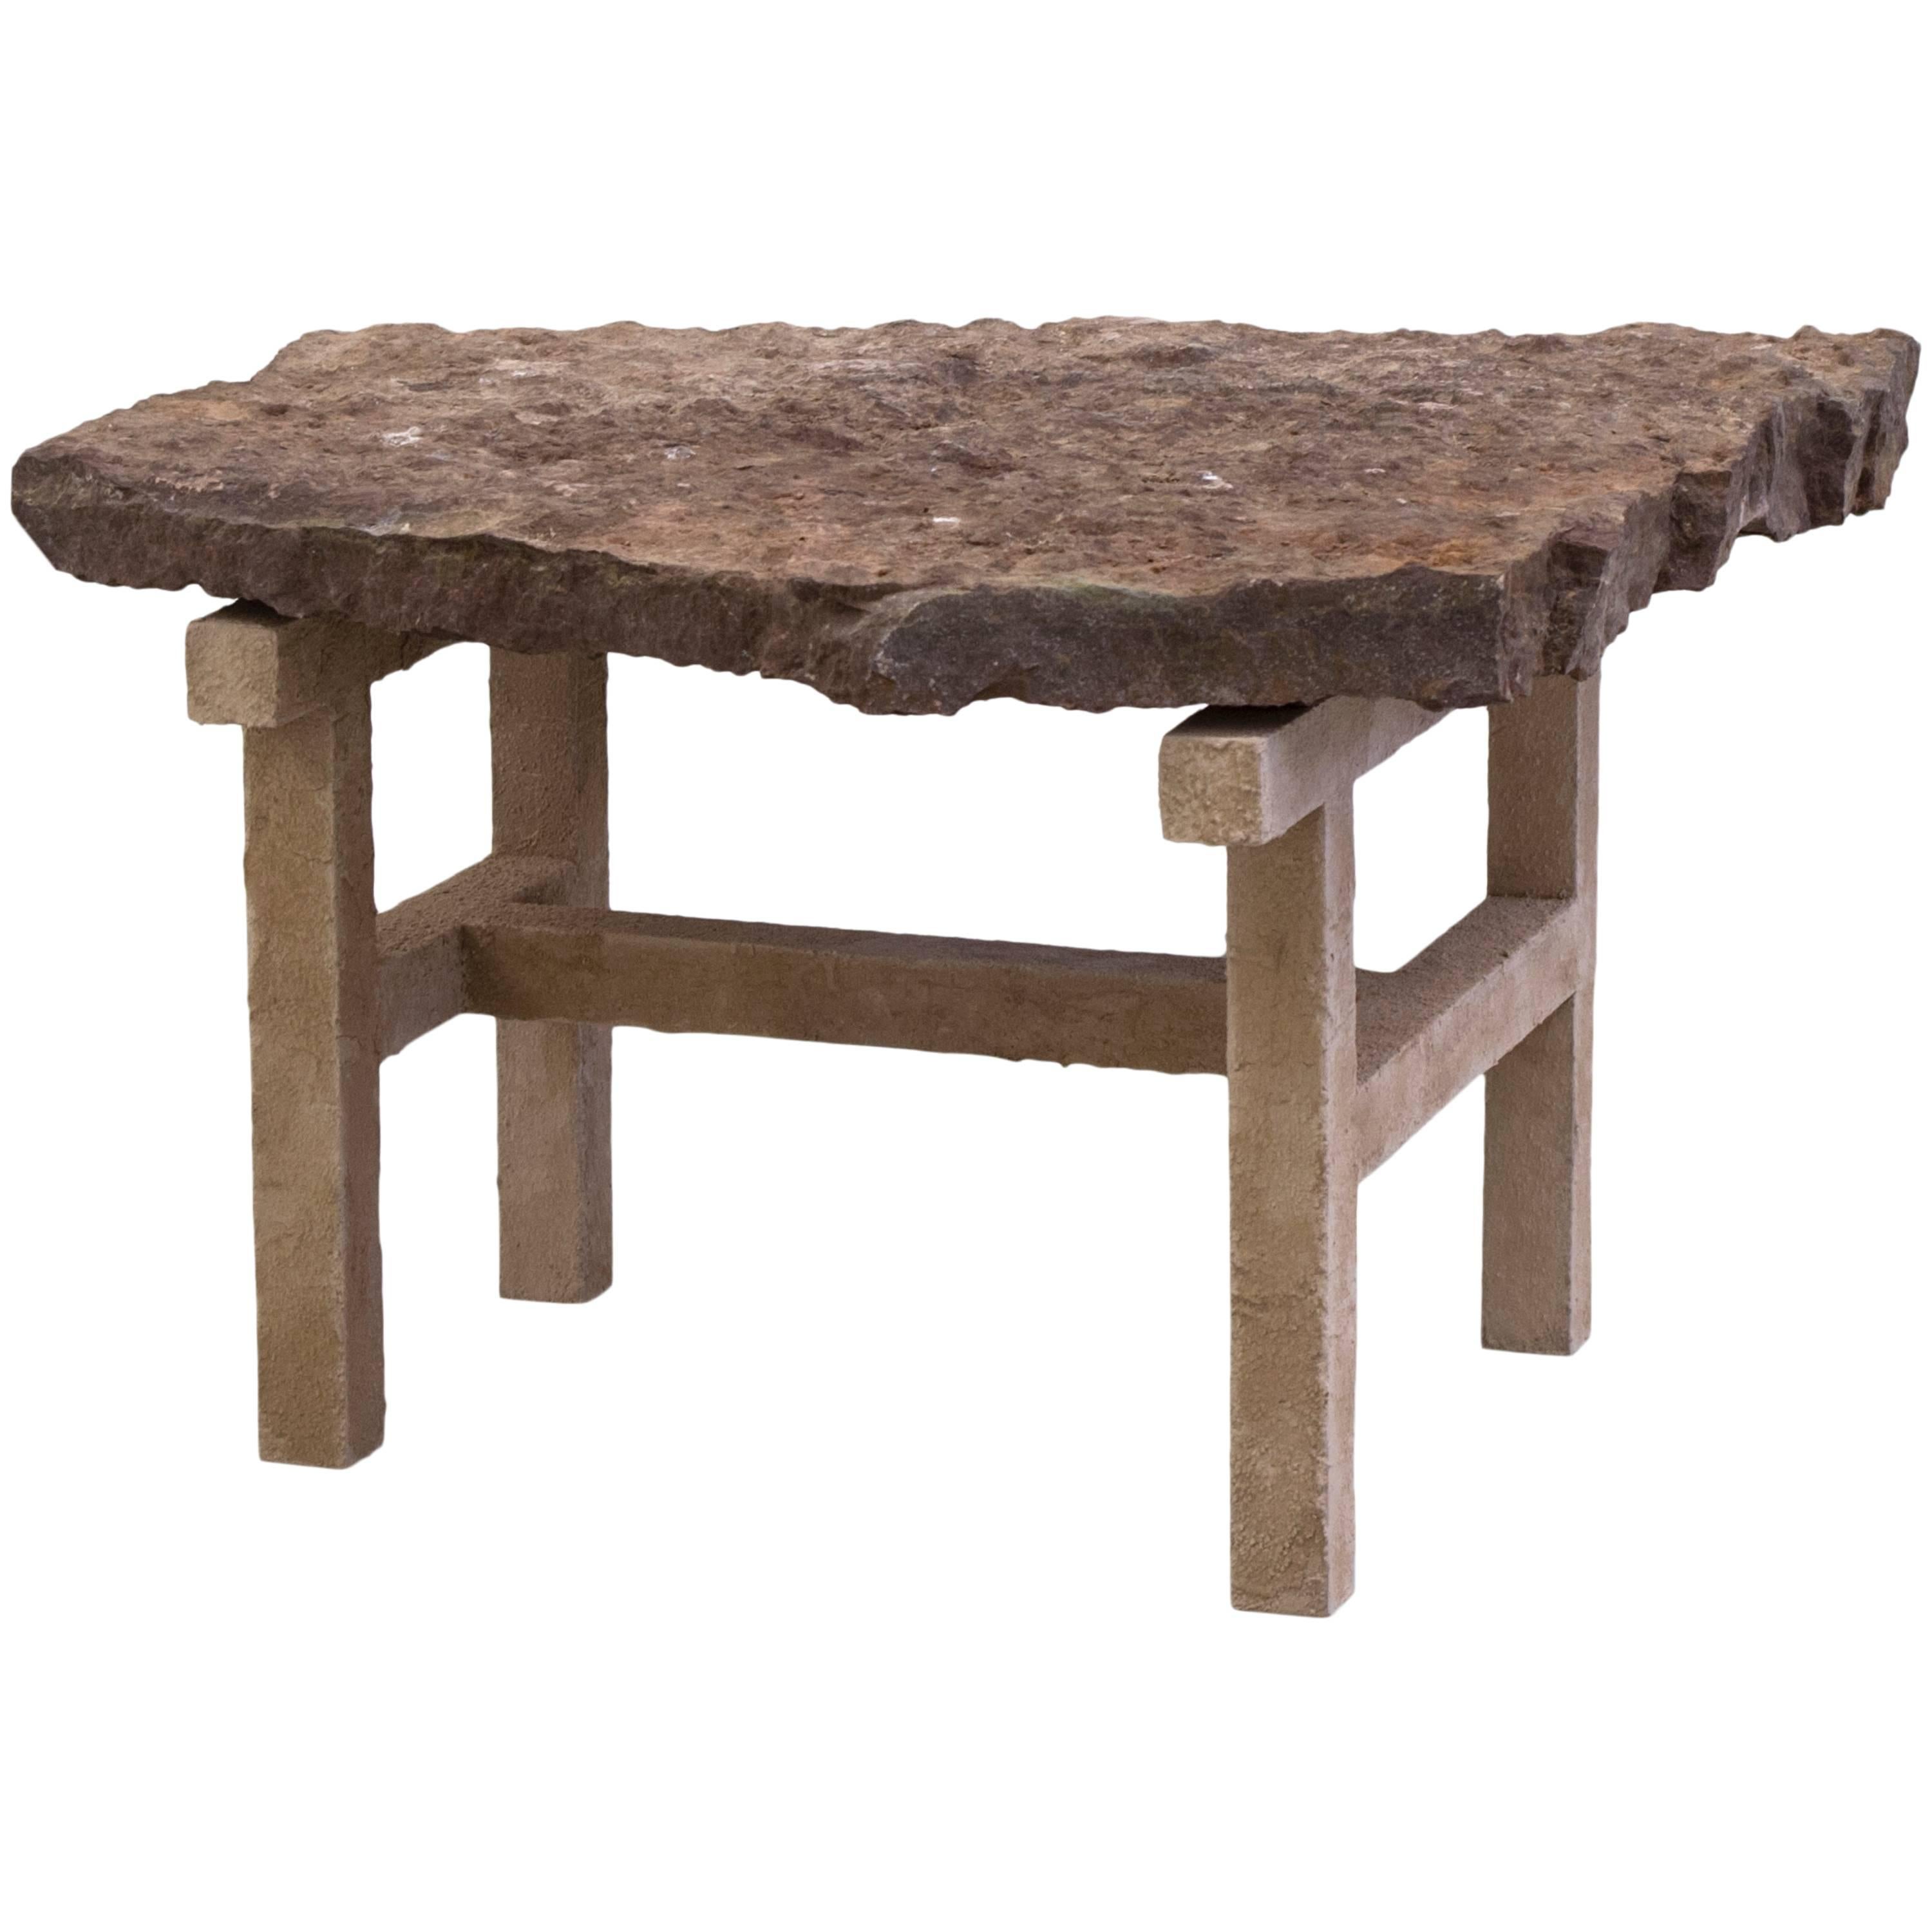 Stoned Table by Fredrik Paulsen